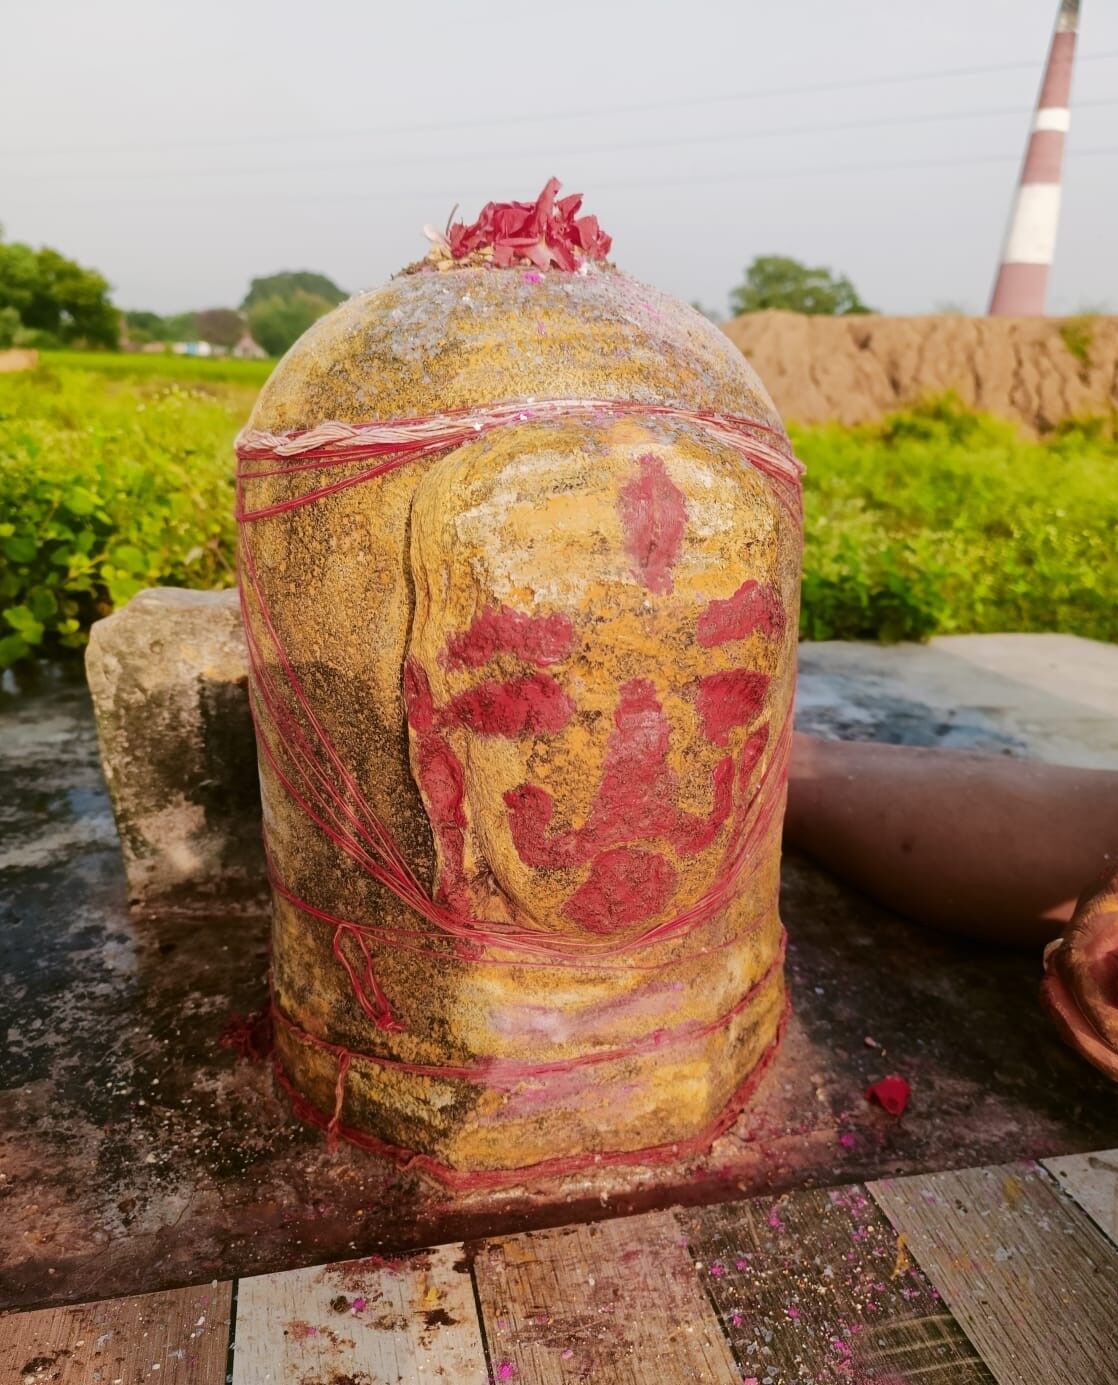 चौबेपुर के भंदहा कला में 1600 साल पुराने स्तंभ और प्रतिमाएं मिलीं, पुरातत्व विभाग ने दी अपनी आख्या